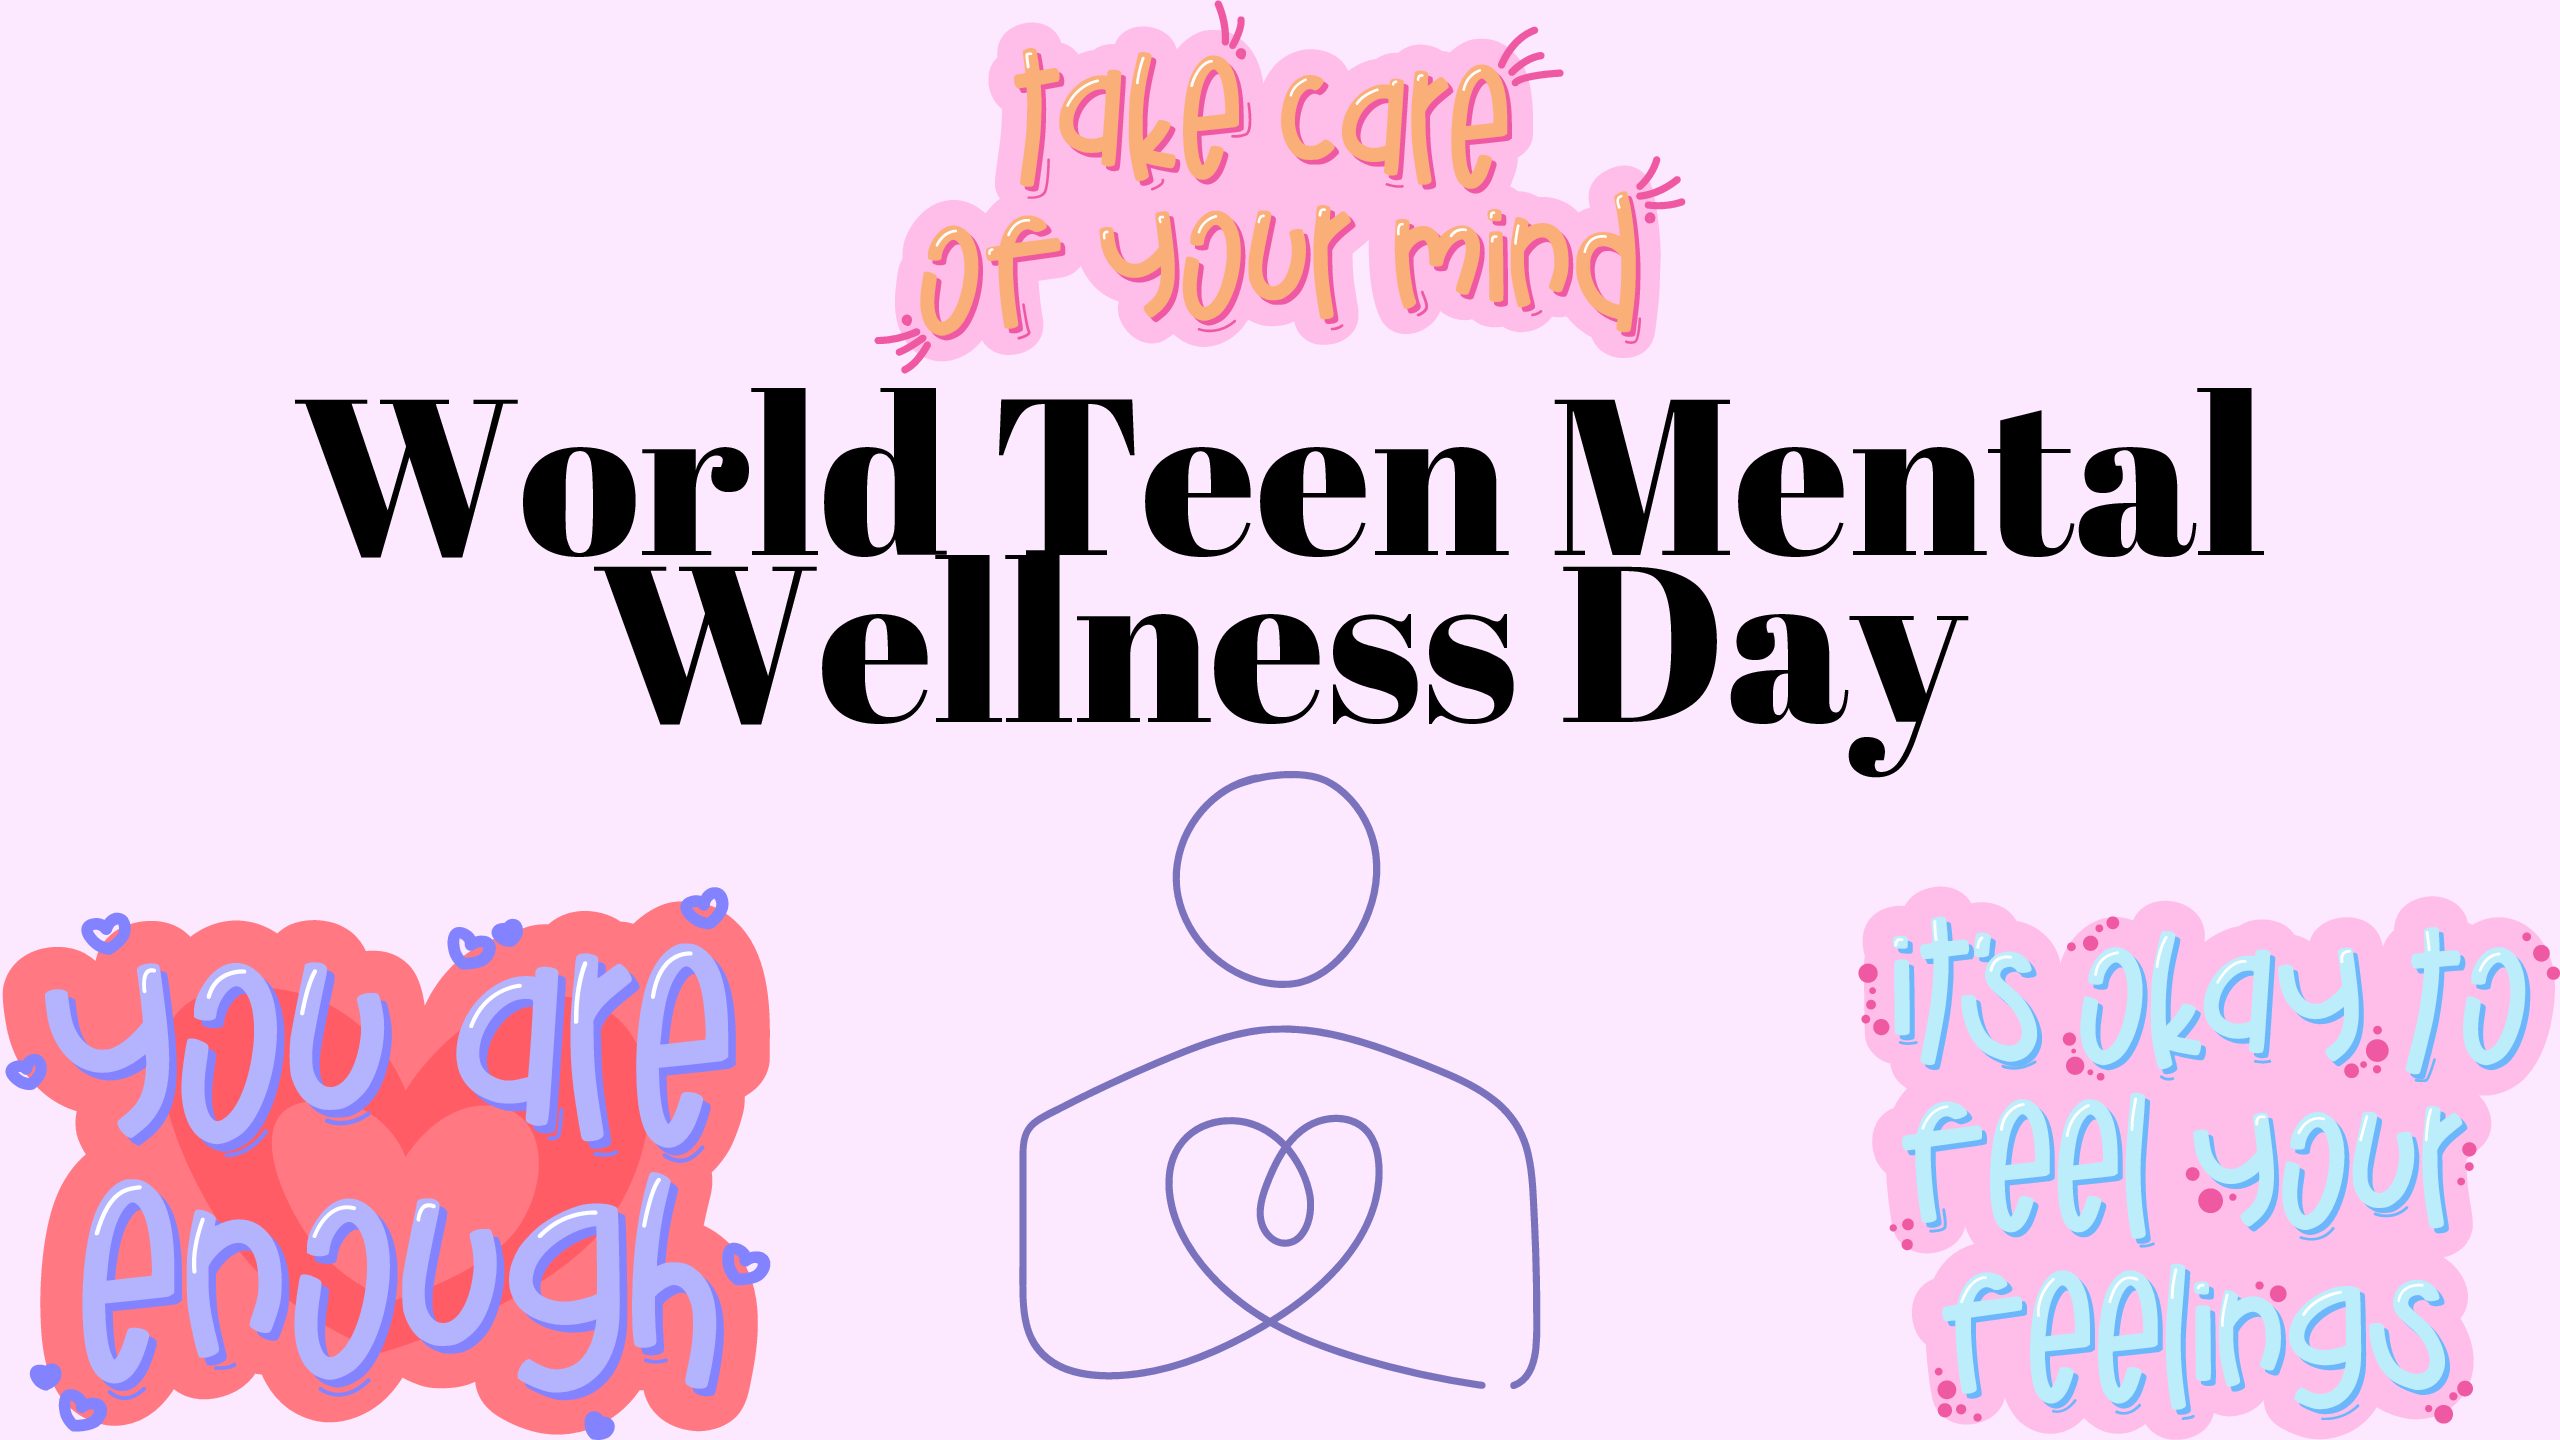 World Teens Mental Wellness Day!